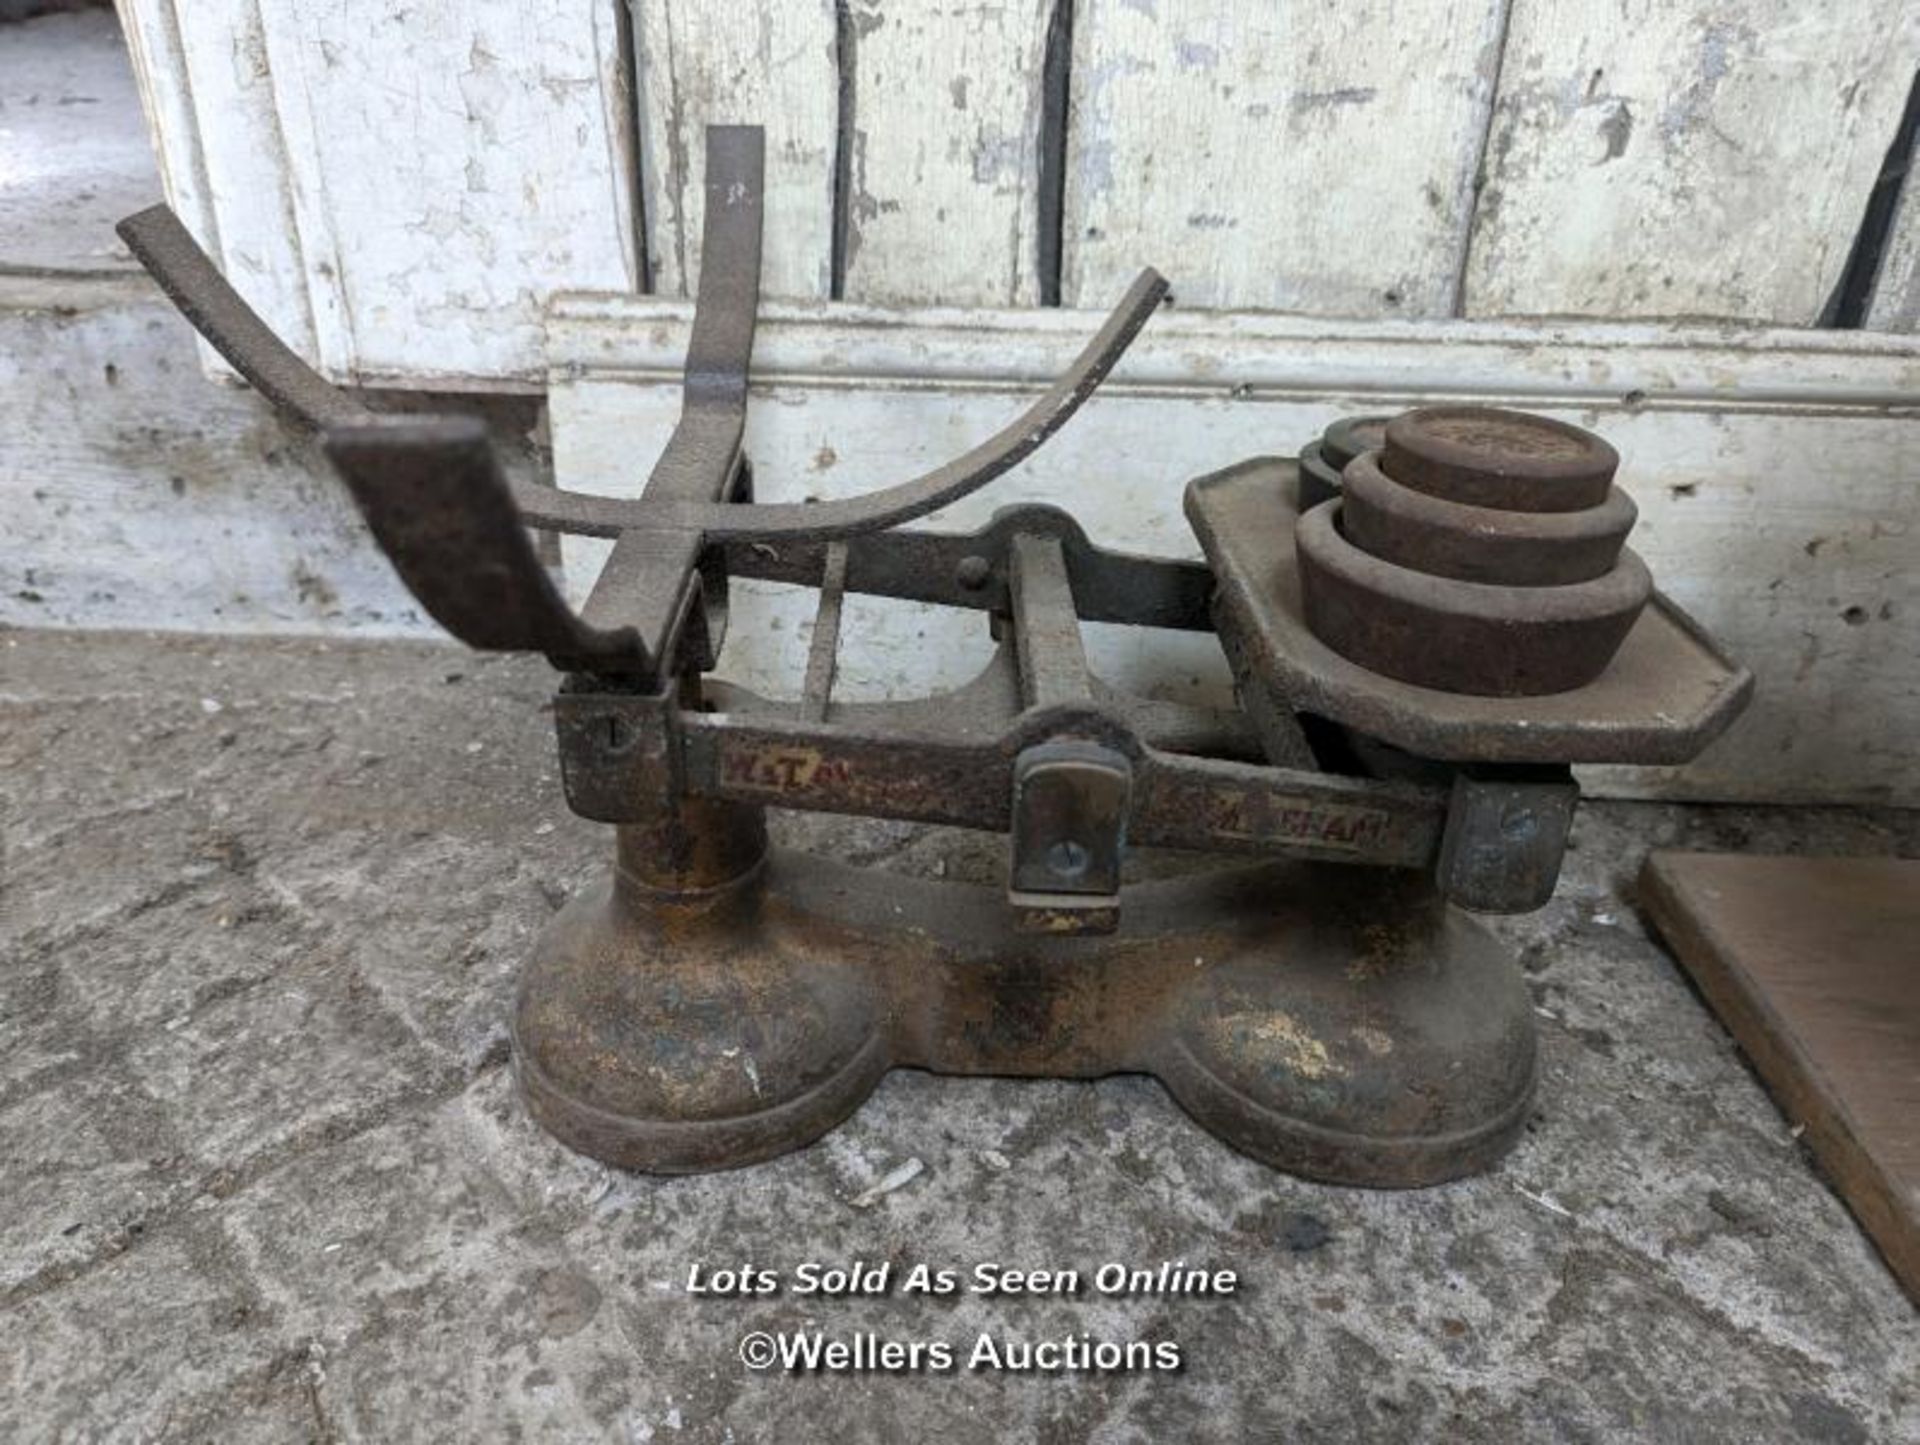 Engineering measure rule, white speaker/foghorn, set of old scales - Image 2 of 4